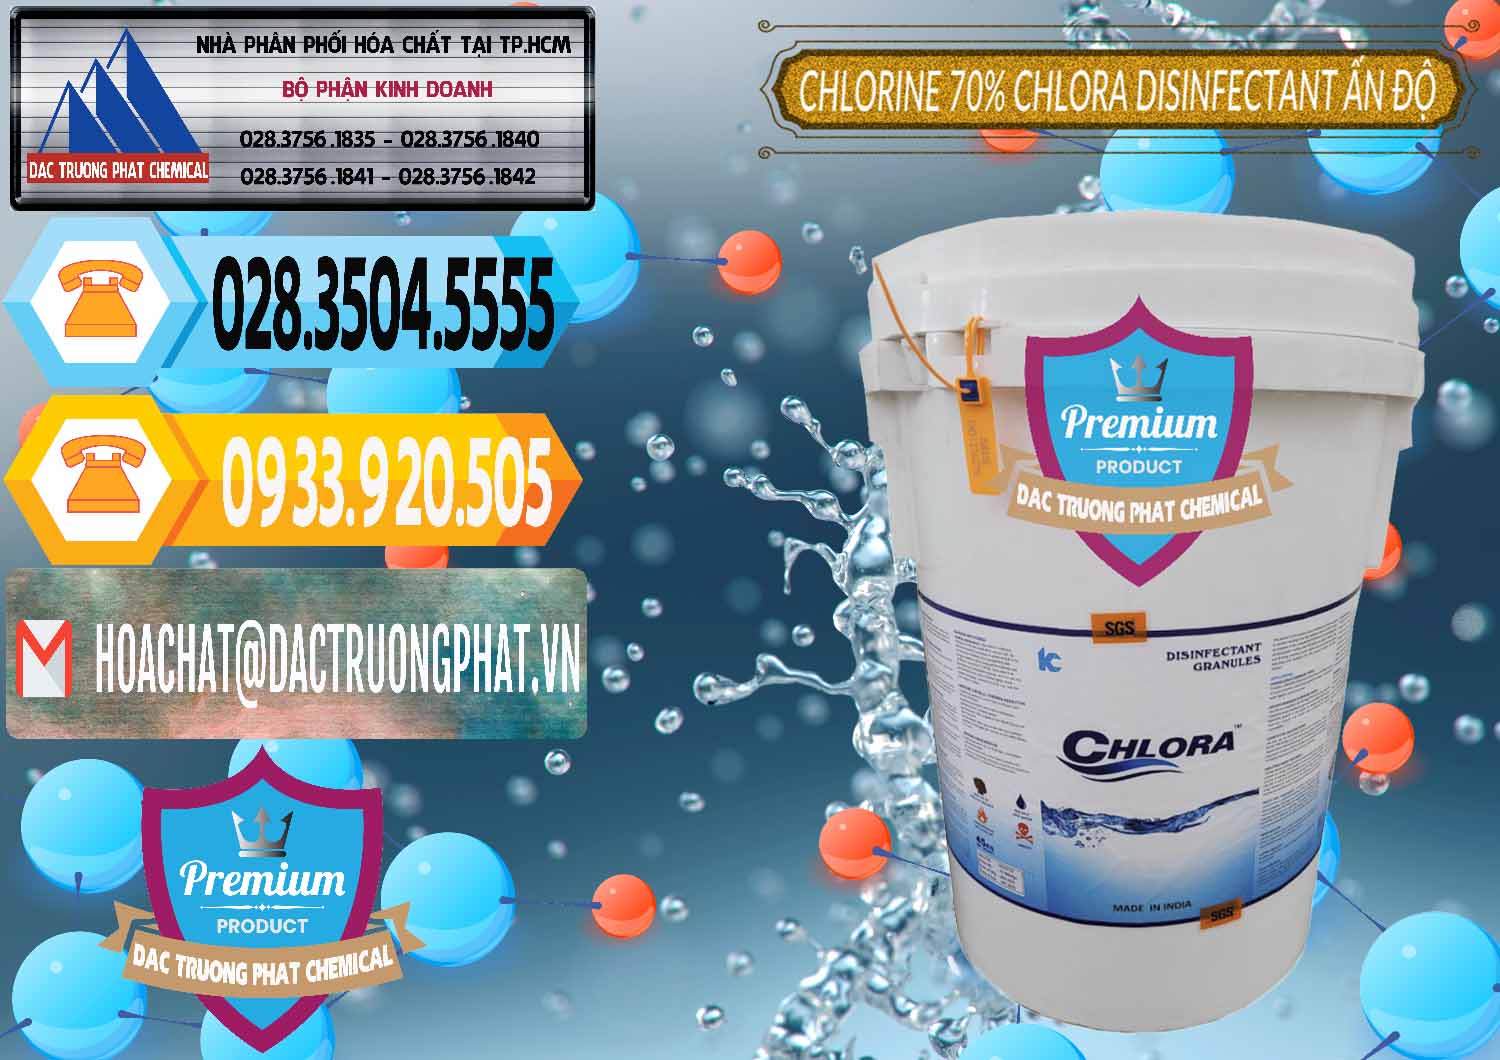 Công ty chuyên phân phối - bán Chlorine – Clorin 70% Chlora Disinfectant Ấn Độ India - 0213 - Cty phân phối _ kinh doanh hóa chất tại TP.HCM - hoachattayrua.net